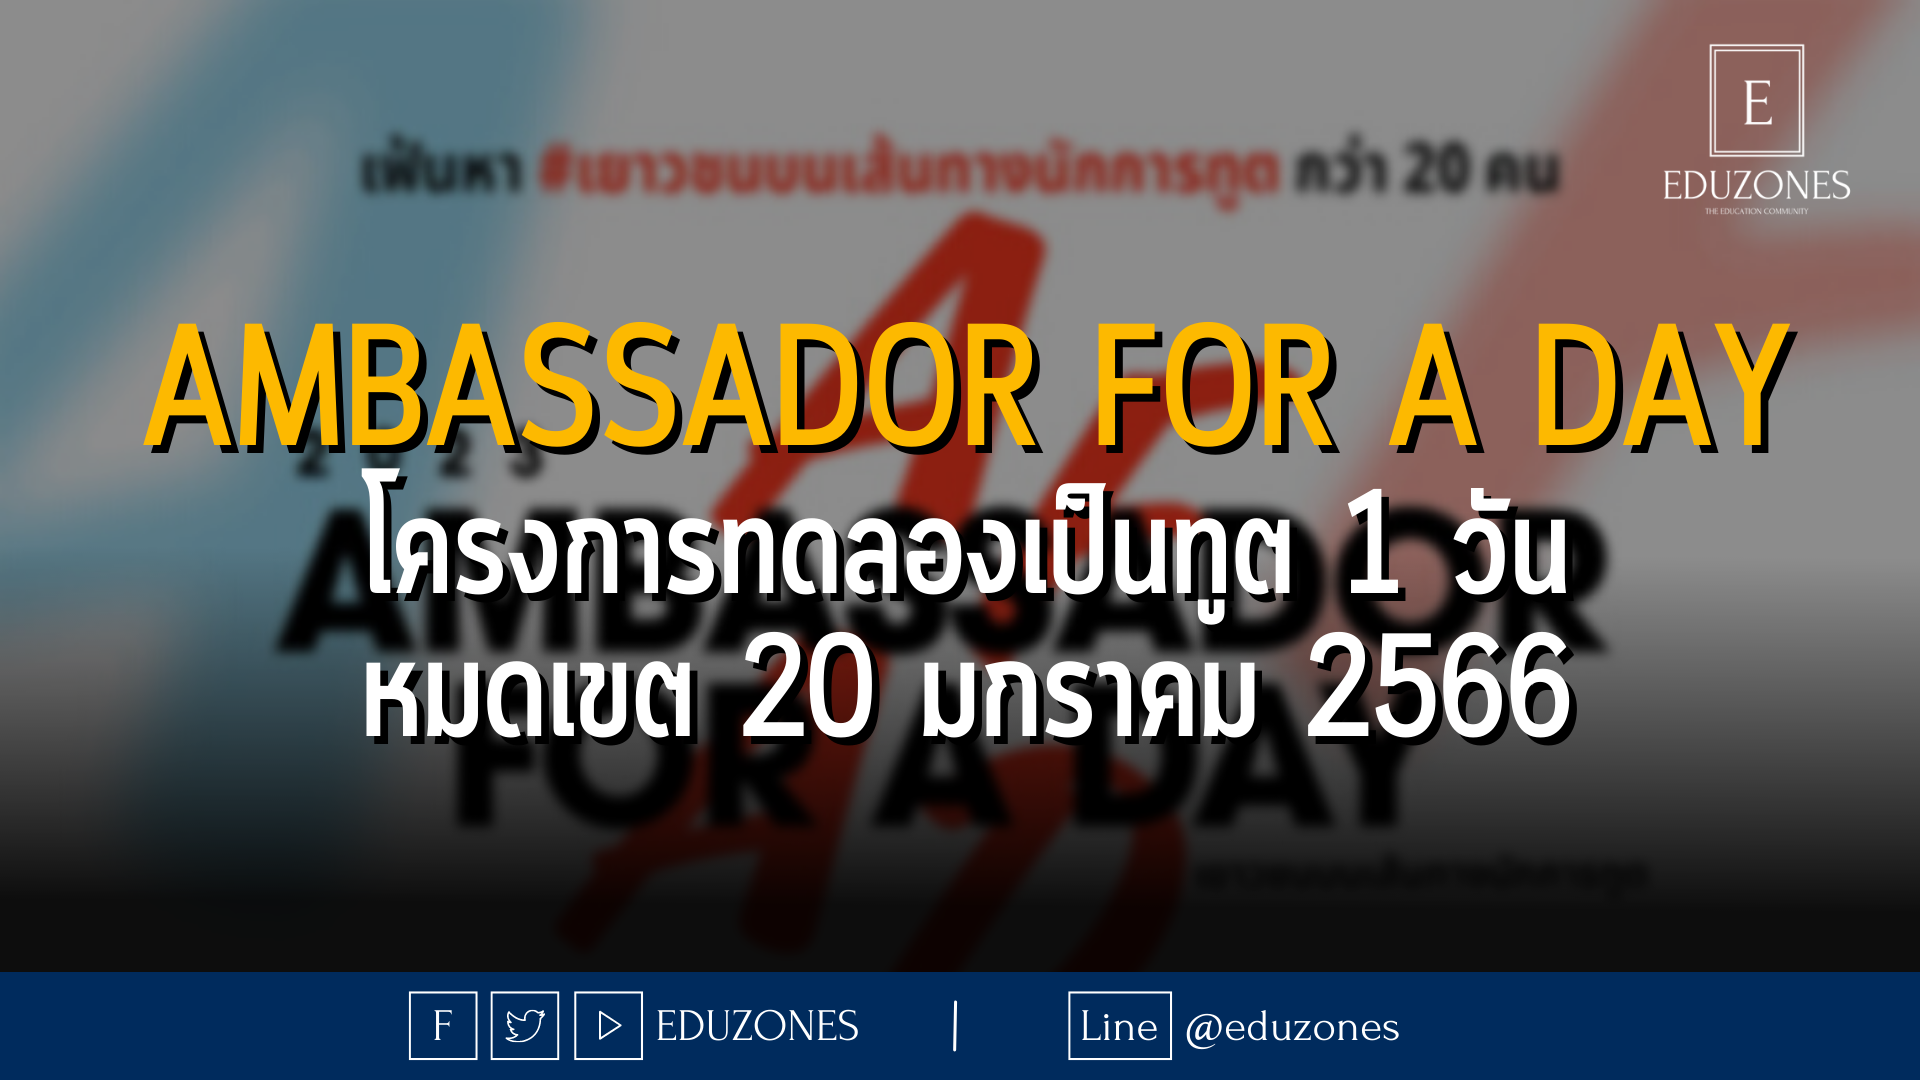 Ambassador For A Day โครงการทดลองเป็นทูต 1 วัน - หมดเขต 20 มกราคม 2566